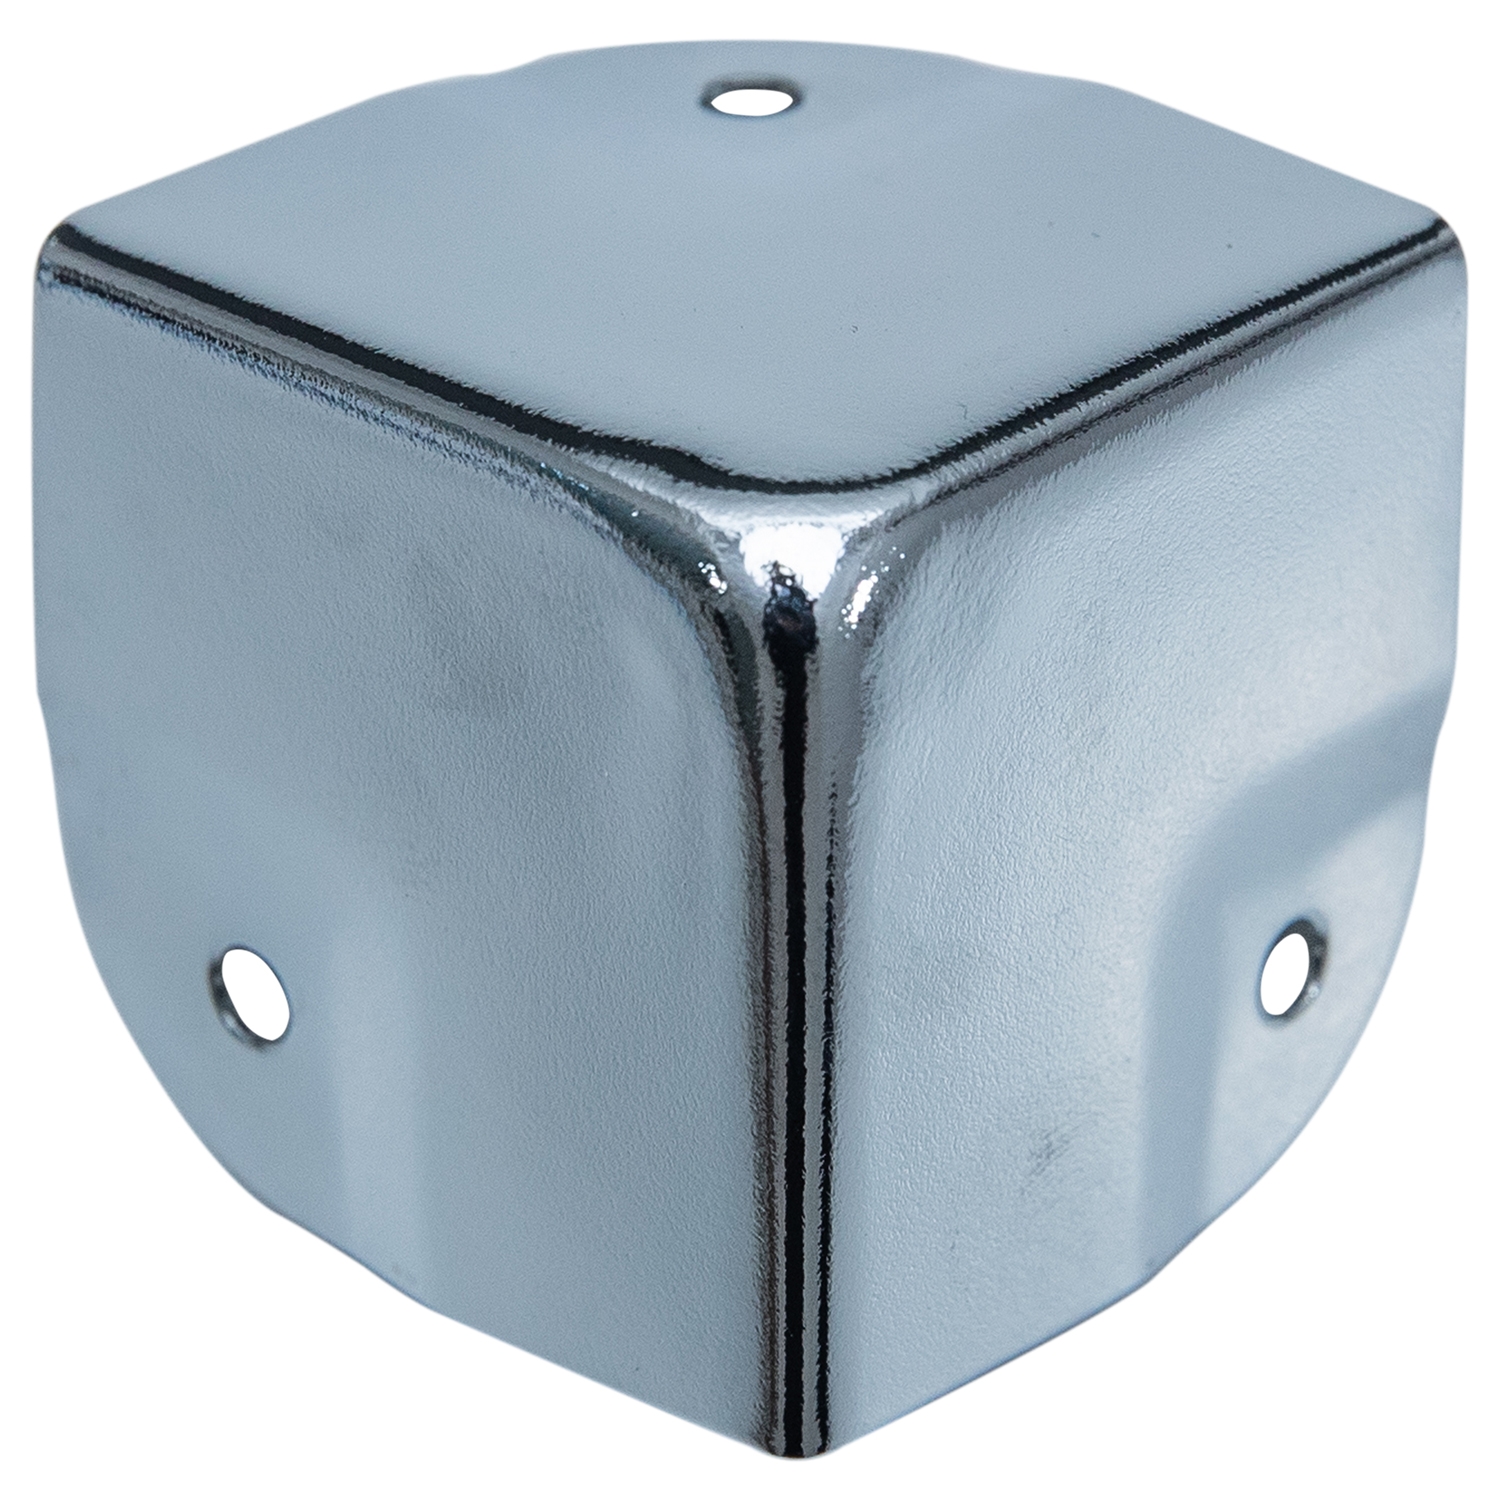 Eckenschutz für Koffer im 8er Set von HMF mit den Maßen 40 x 40 mm in Silber verzinkt